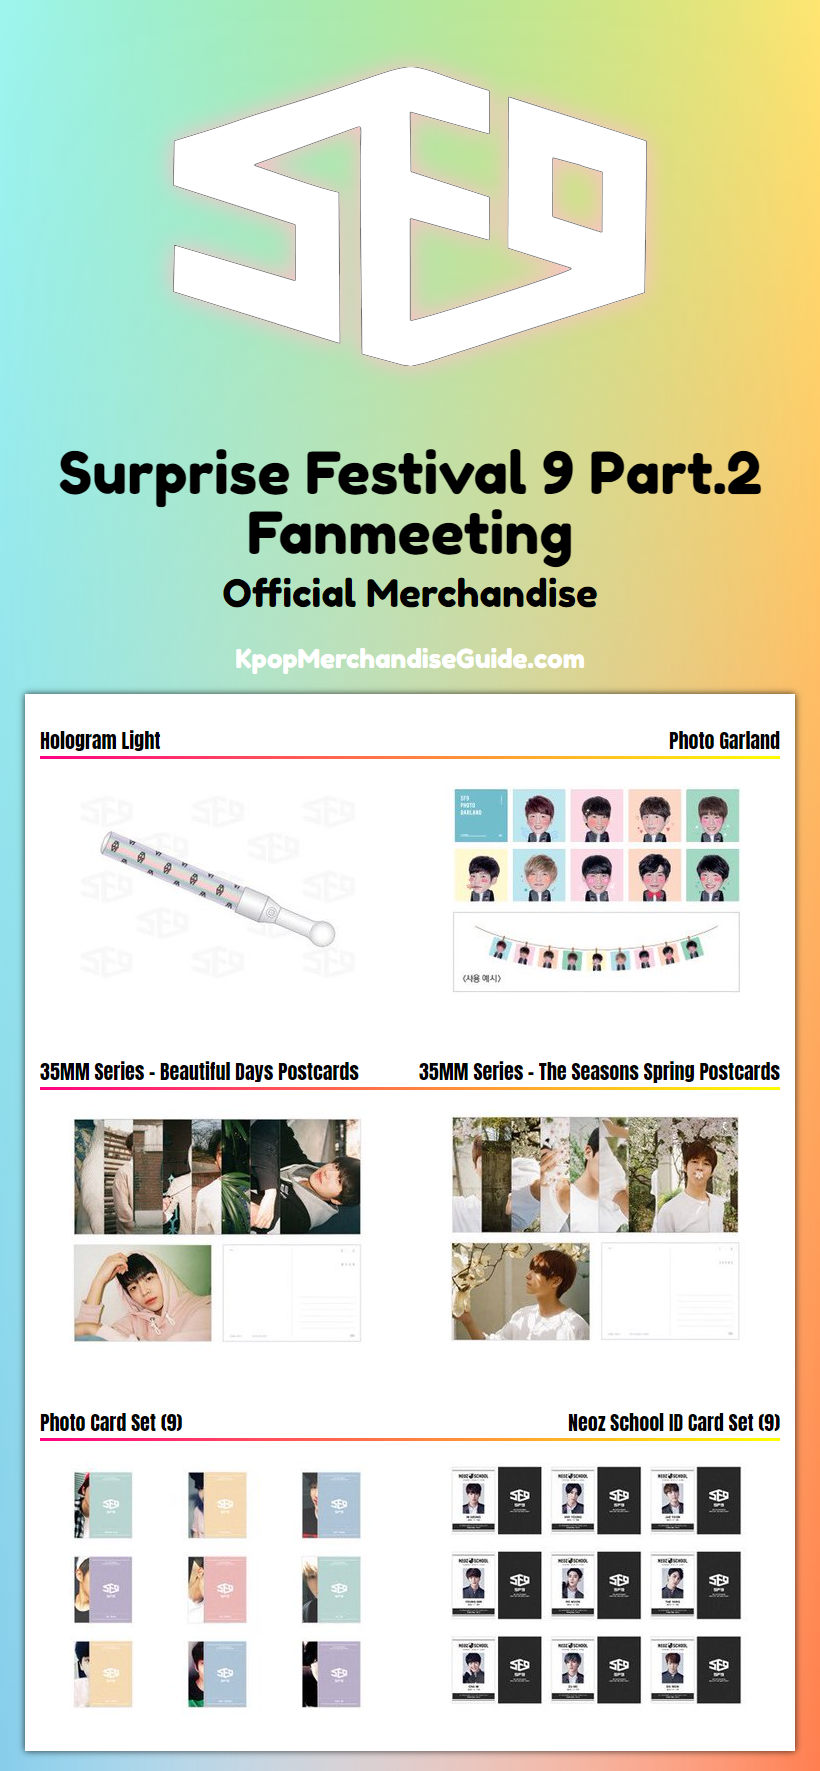 Surprise Festival 9 Fanmeeting Part.2 merchandise